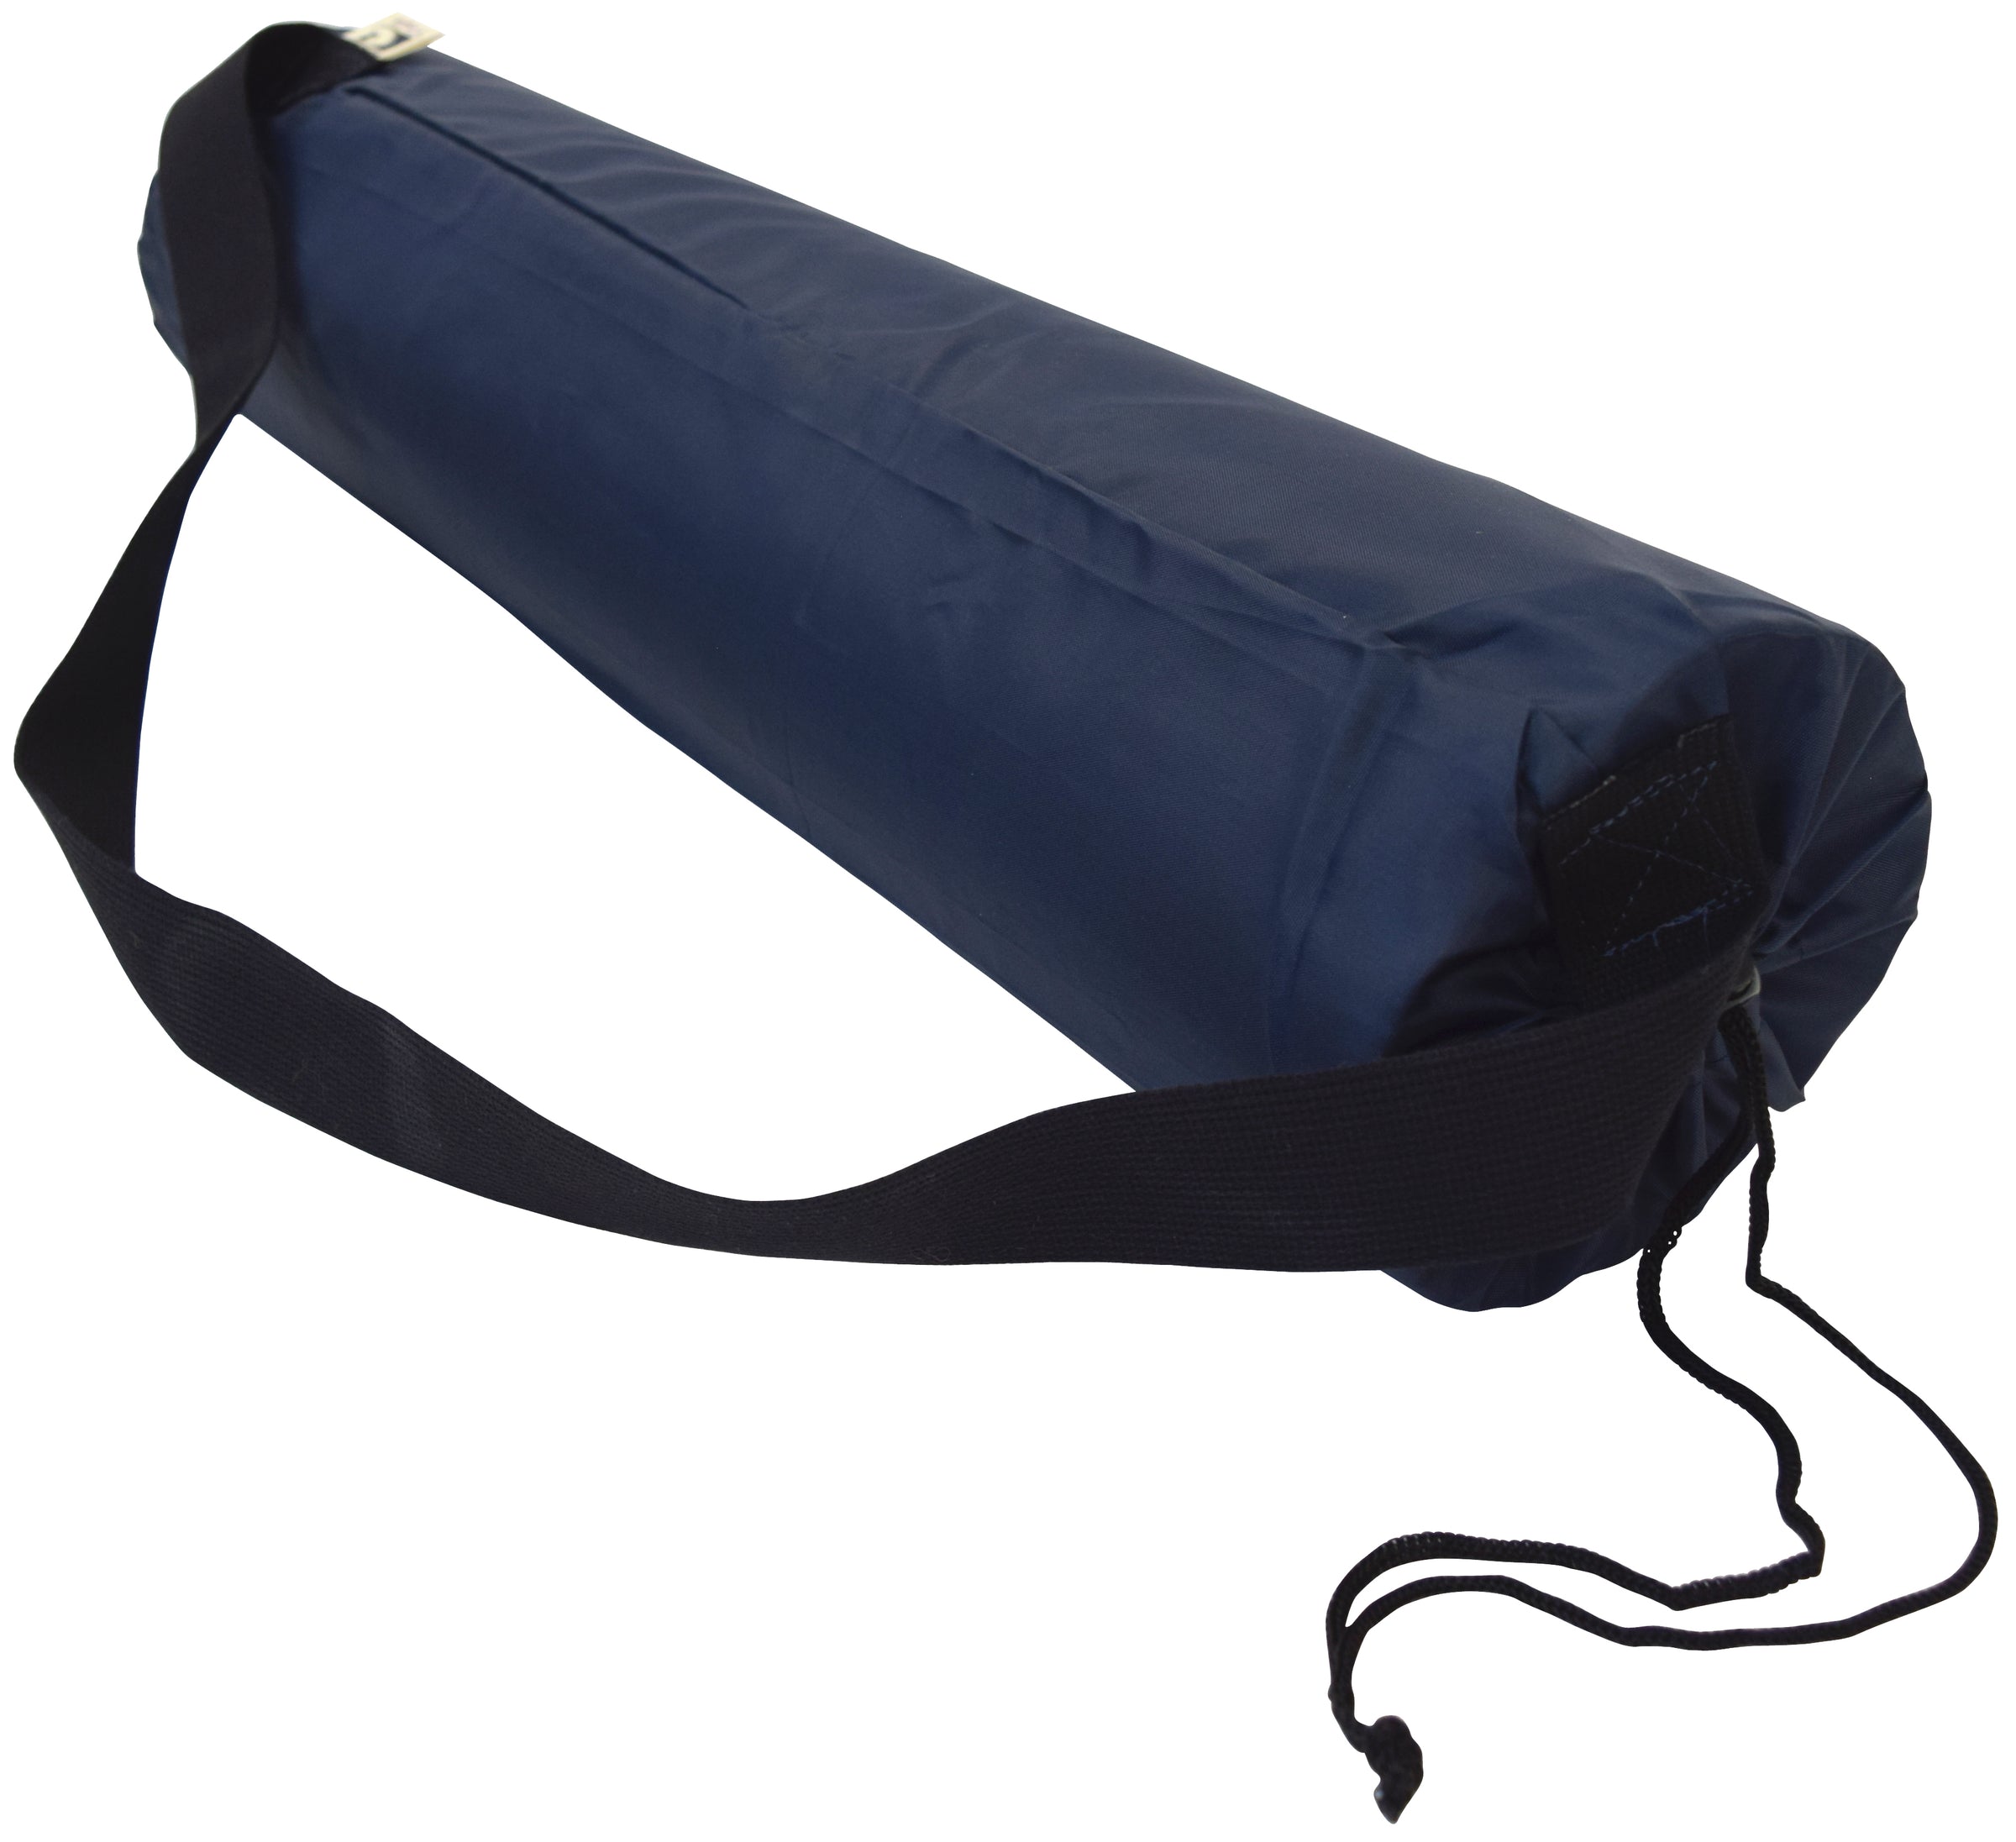 Yoga Mat With Carry Bag